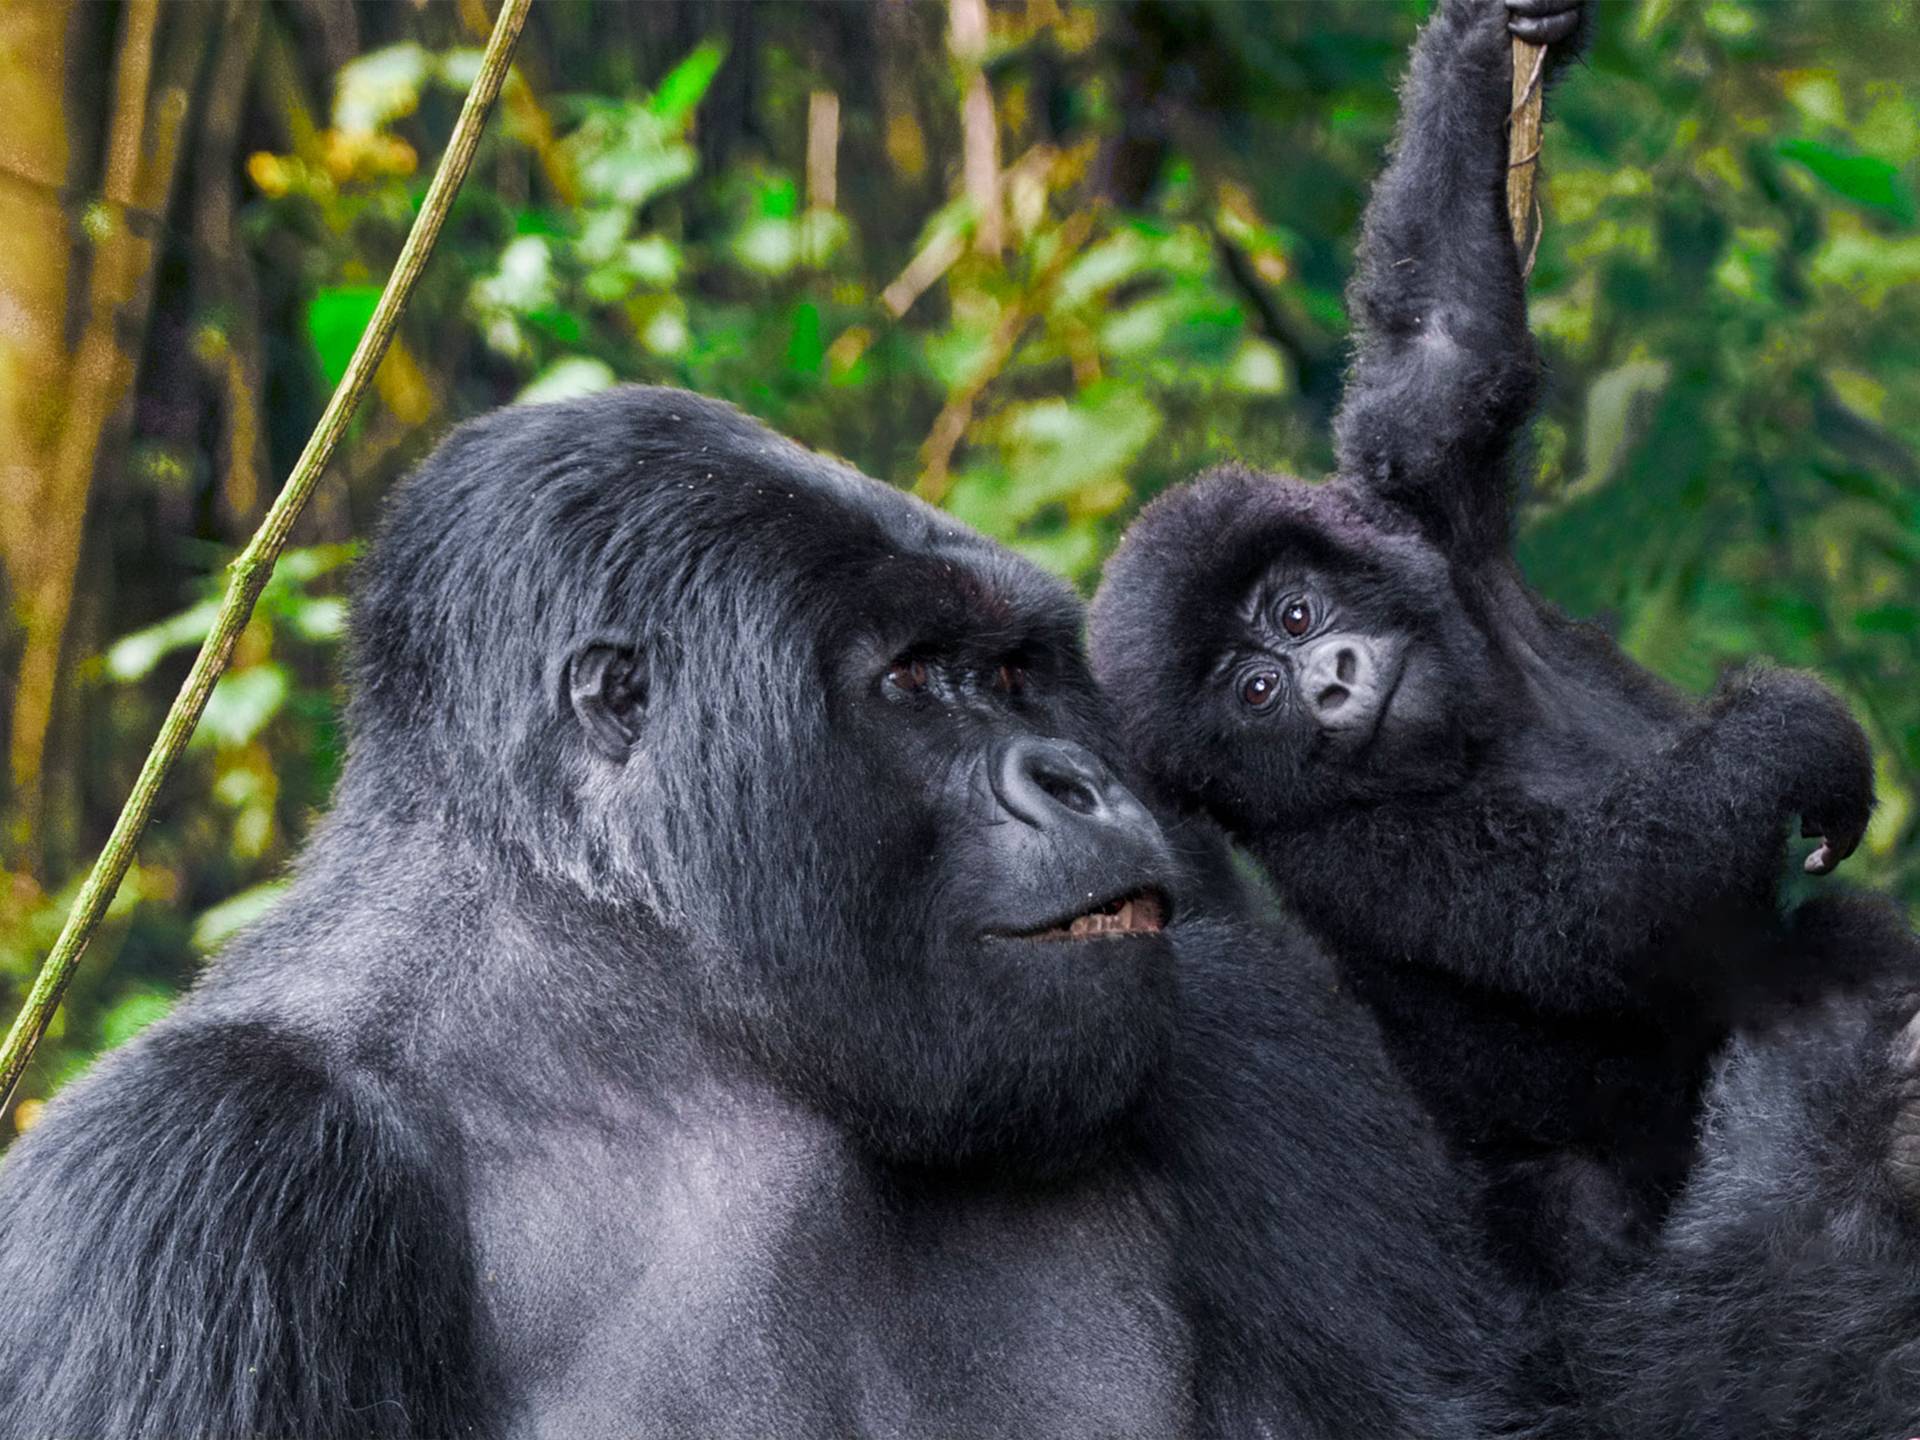 Www bing com image. Горилла и шимпанзе. Приматы горилла. Парк Вирунга человекообразные обезьяны. Горилла в природе.